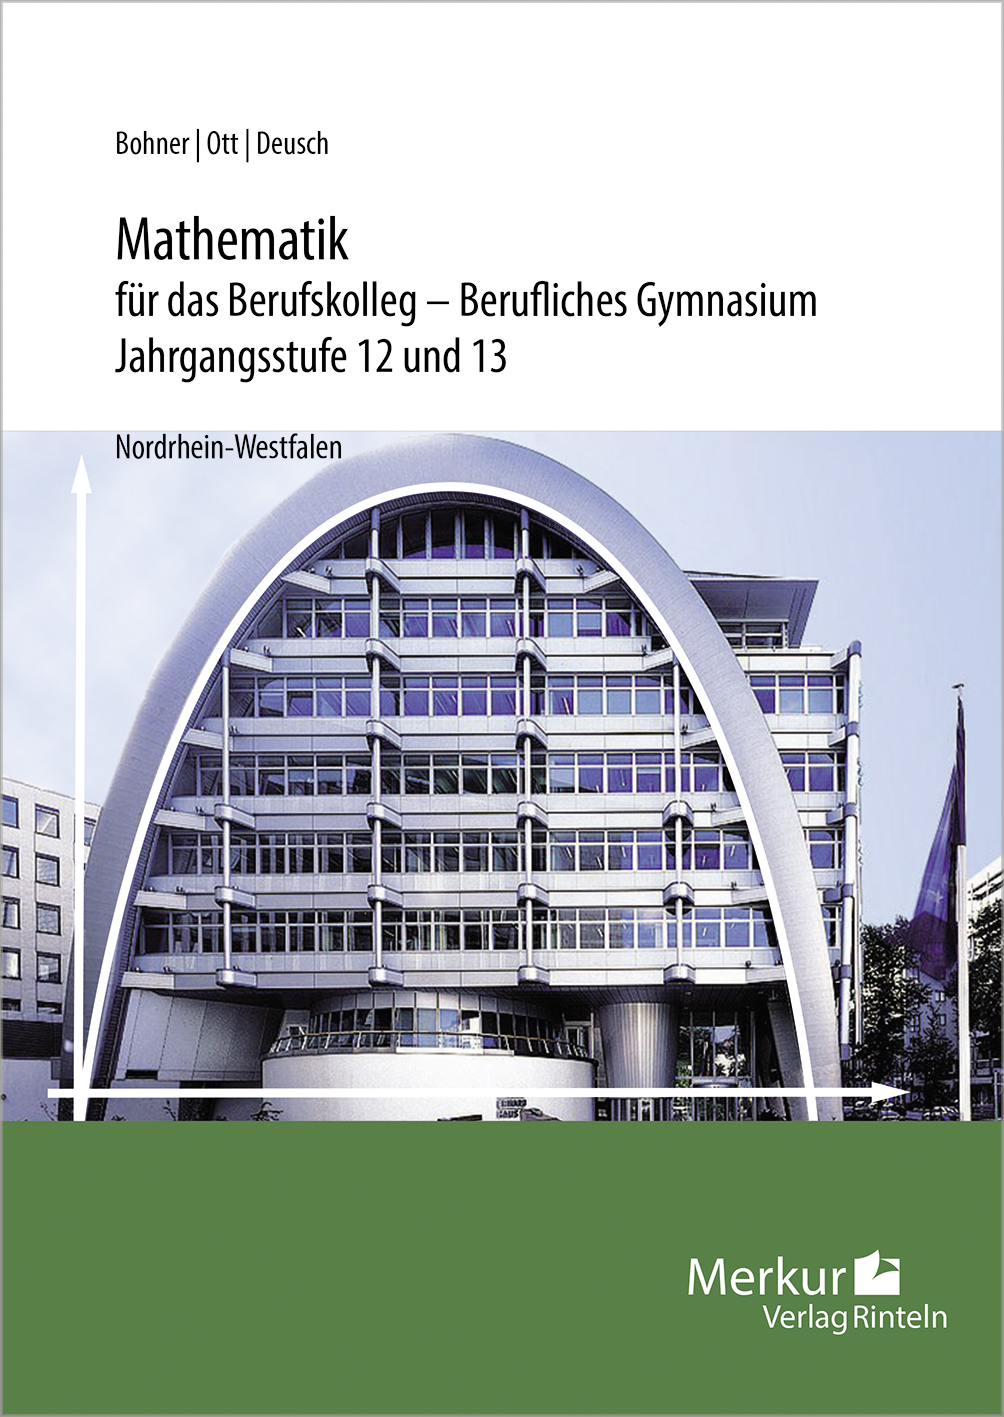 Mathematik für das Berufskolleg - Berufliches Gymnasium Jahrgangsstufe 12 und 13 (NRW)